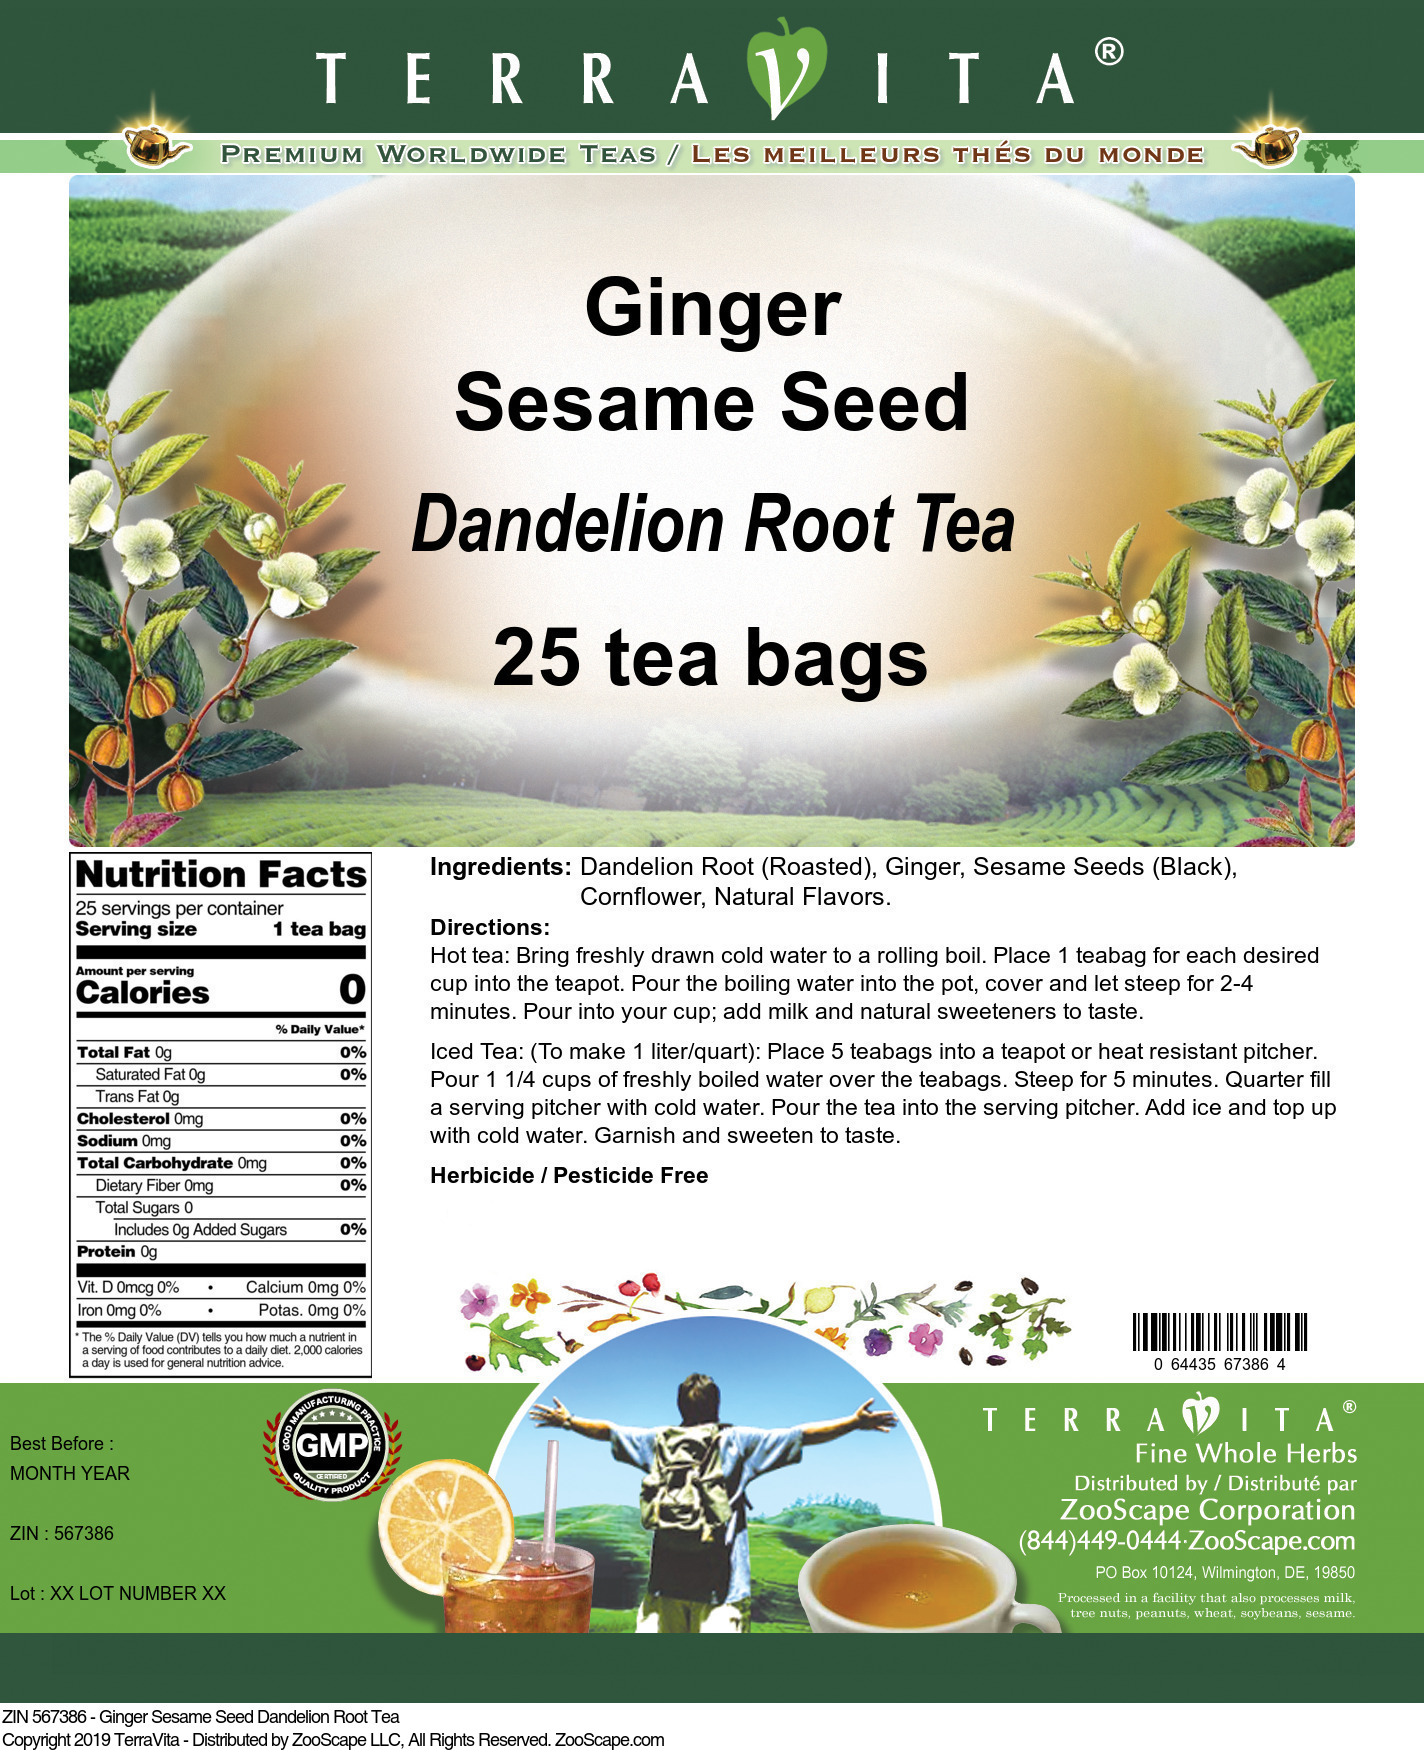 Ginger Sesame Seed Dandelion Root Tea - Label